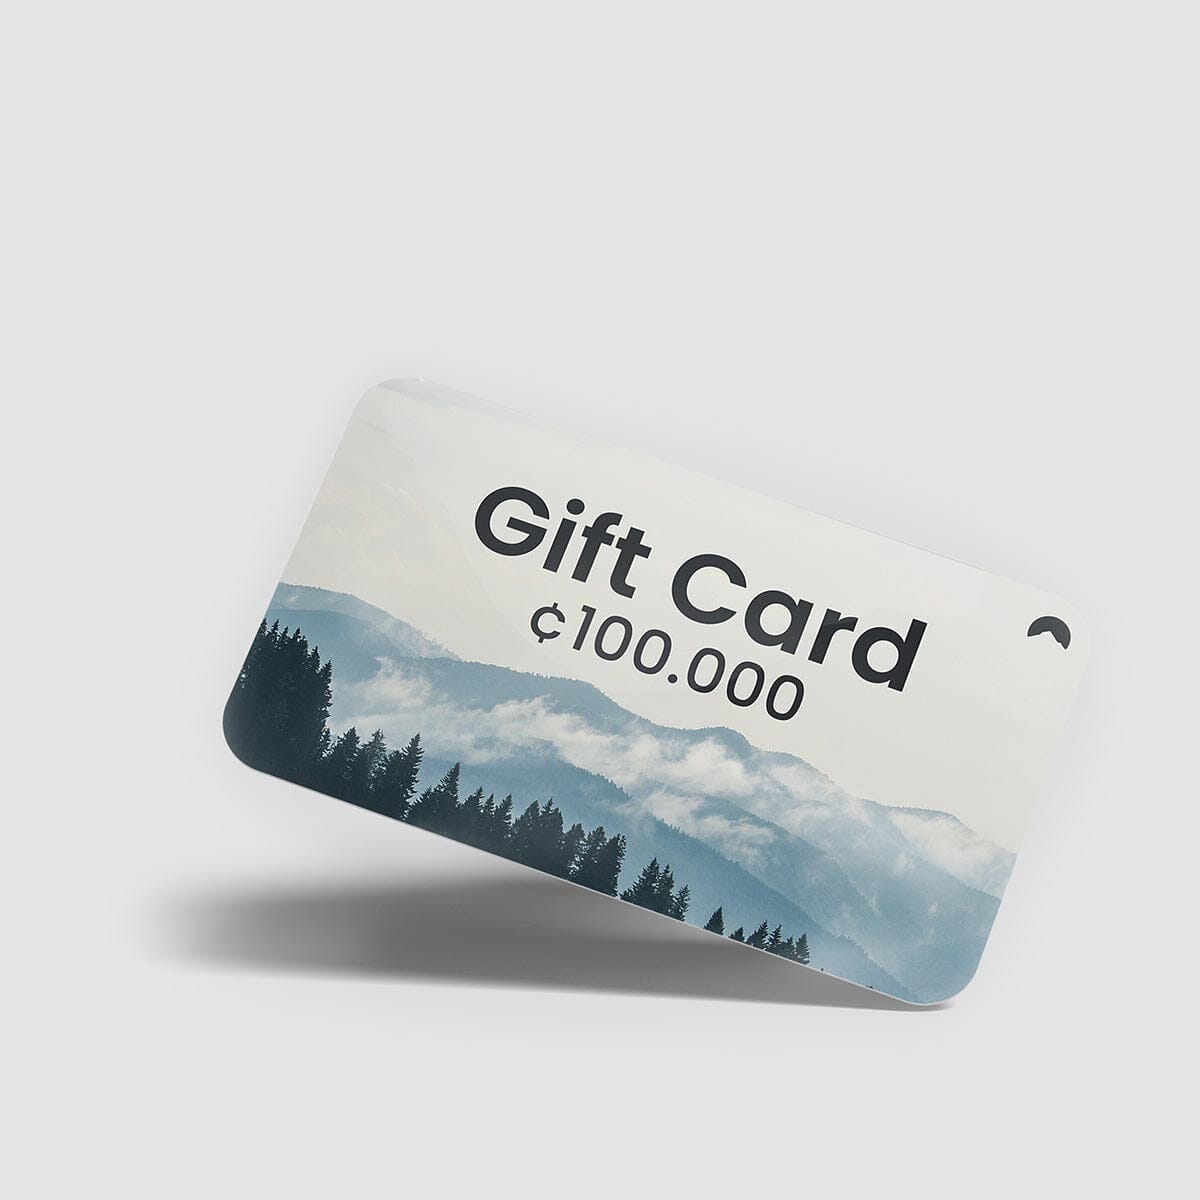 Tarjeta de regalo Gift Cards La Fiebre de Viajar CRC 100,000.00 